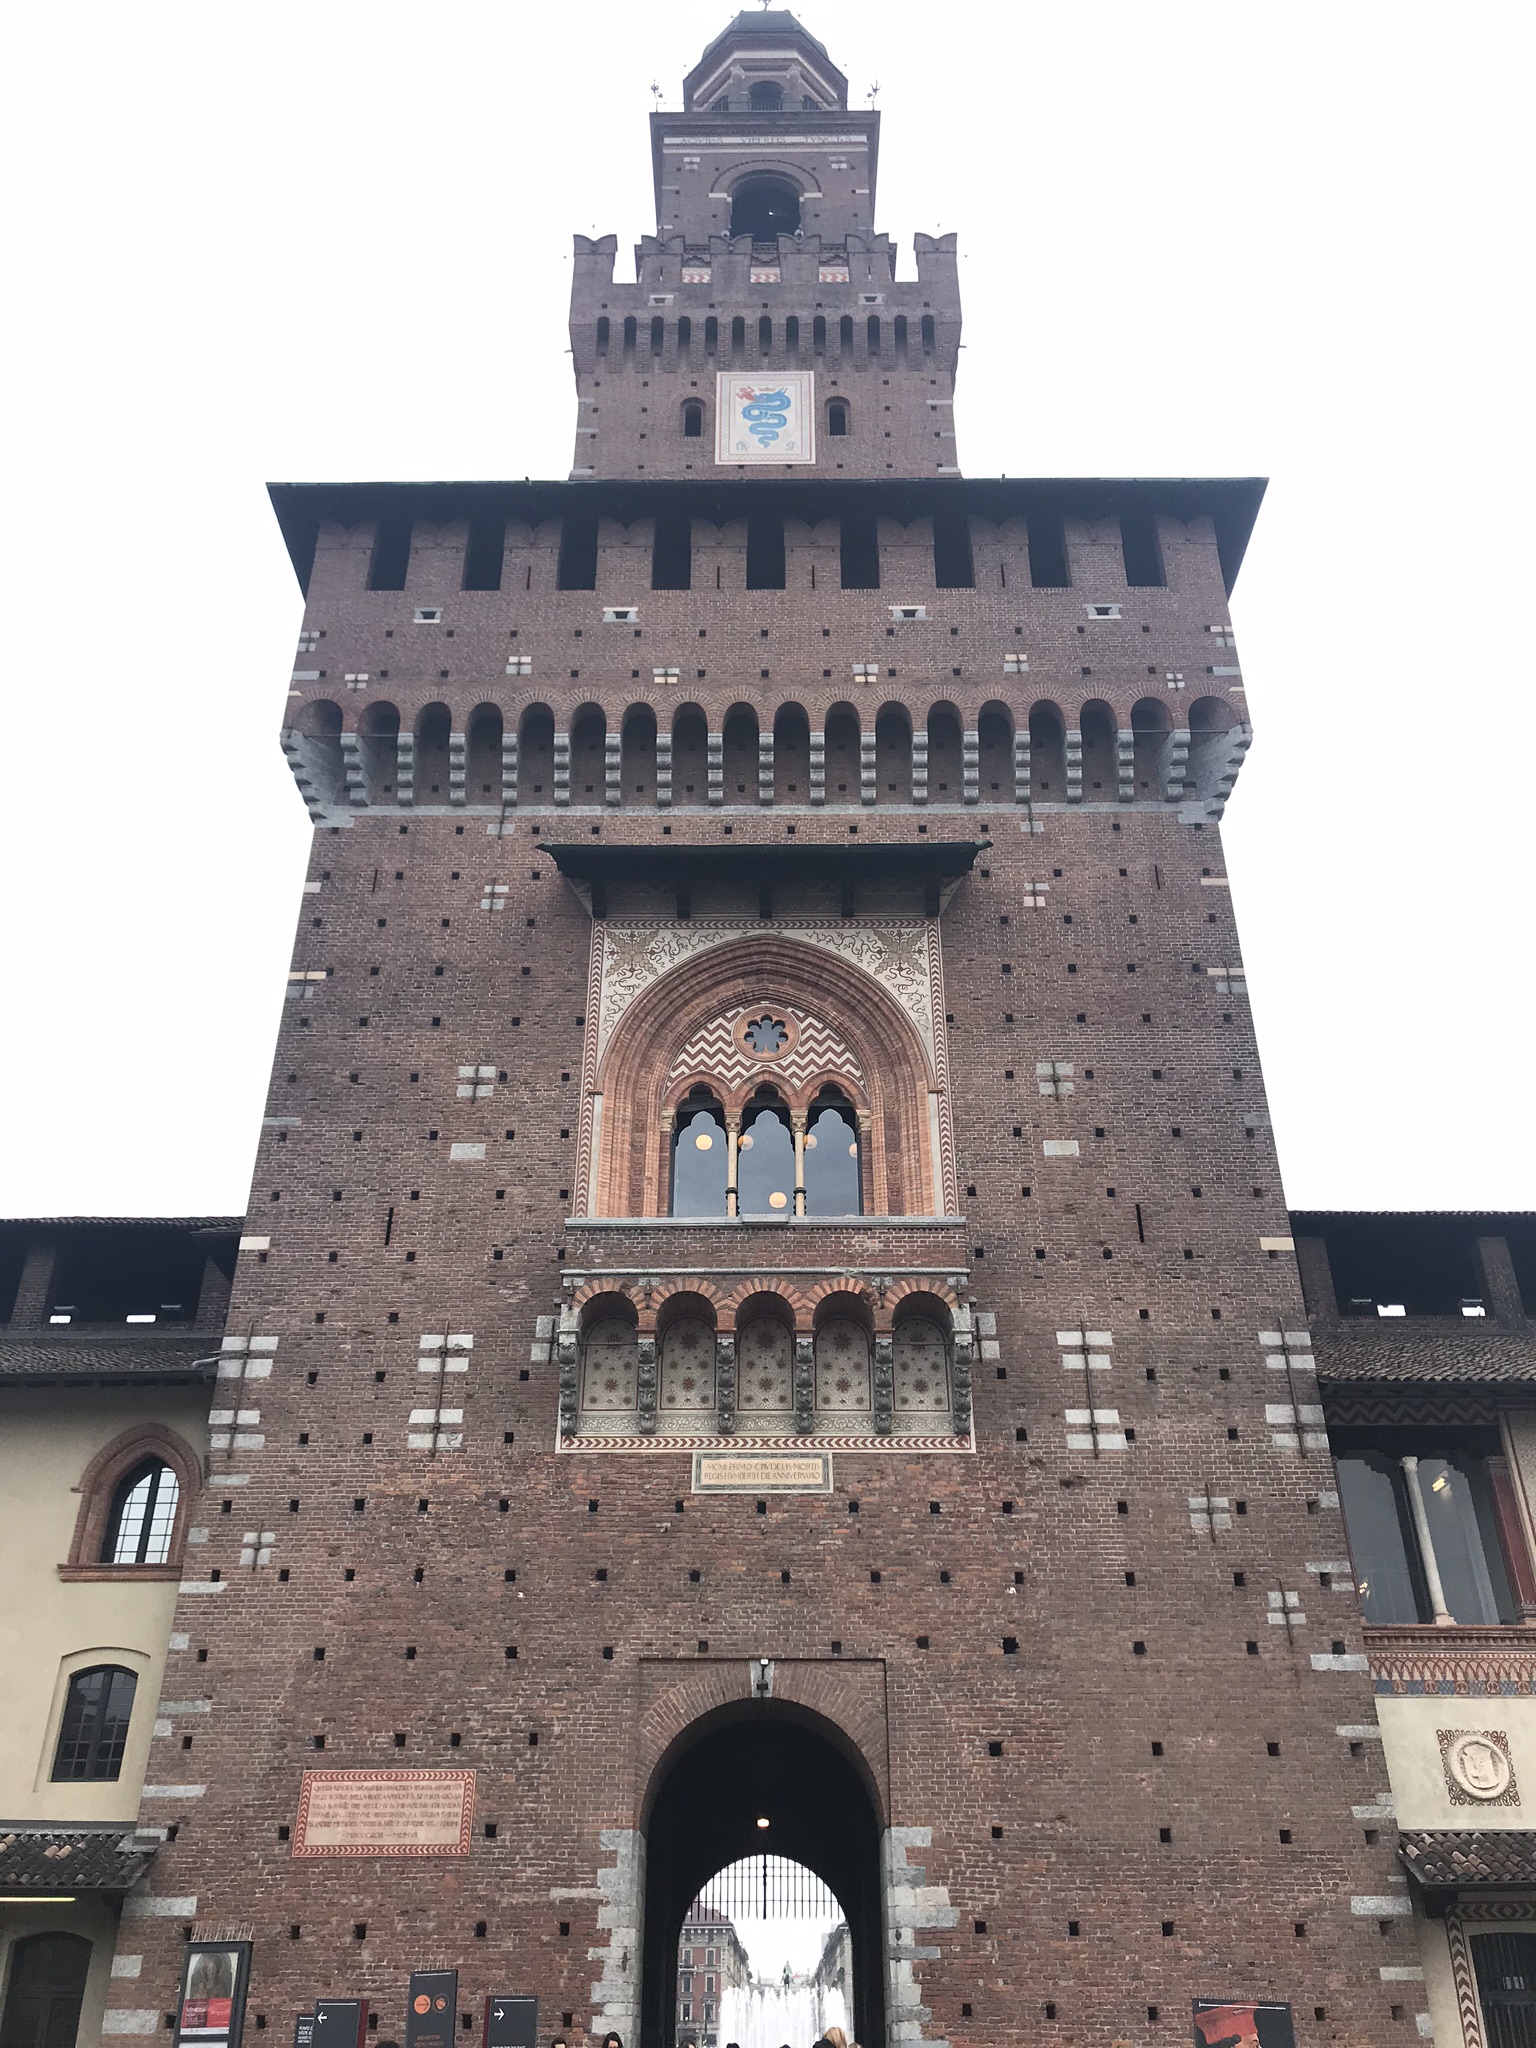 A négyzet alaprajzú építmény egykoron a milánói hercegek rezidenciája volt. Korábban Castello di Porta Giovia néven volt ismert, a középkori városfal egyik kapujáról nevezték el, amelynek a közelében állt. Mai nevét a 19. század eleji restaurálások során kapta, amikor az építmény a város tulajdonába került.